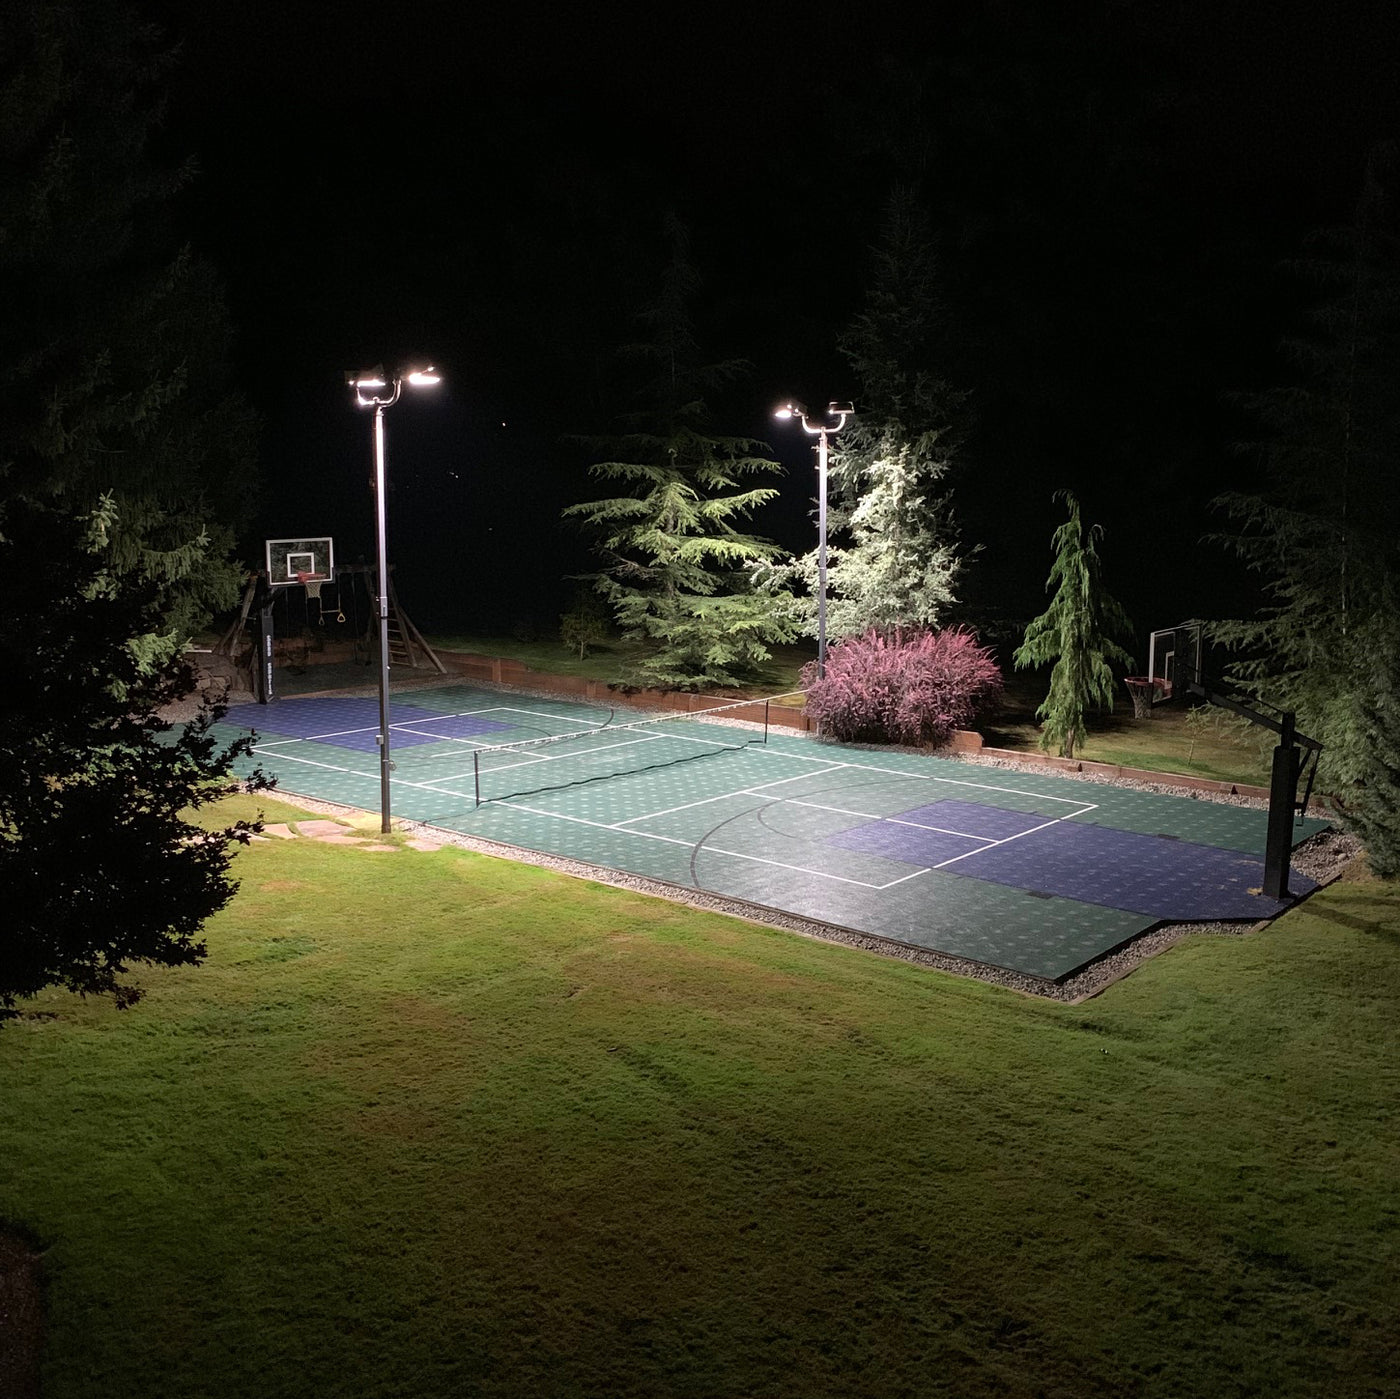 Shoebox Light Fixtures for Backyard Sports Court